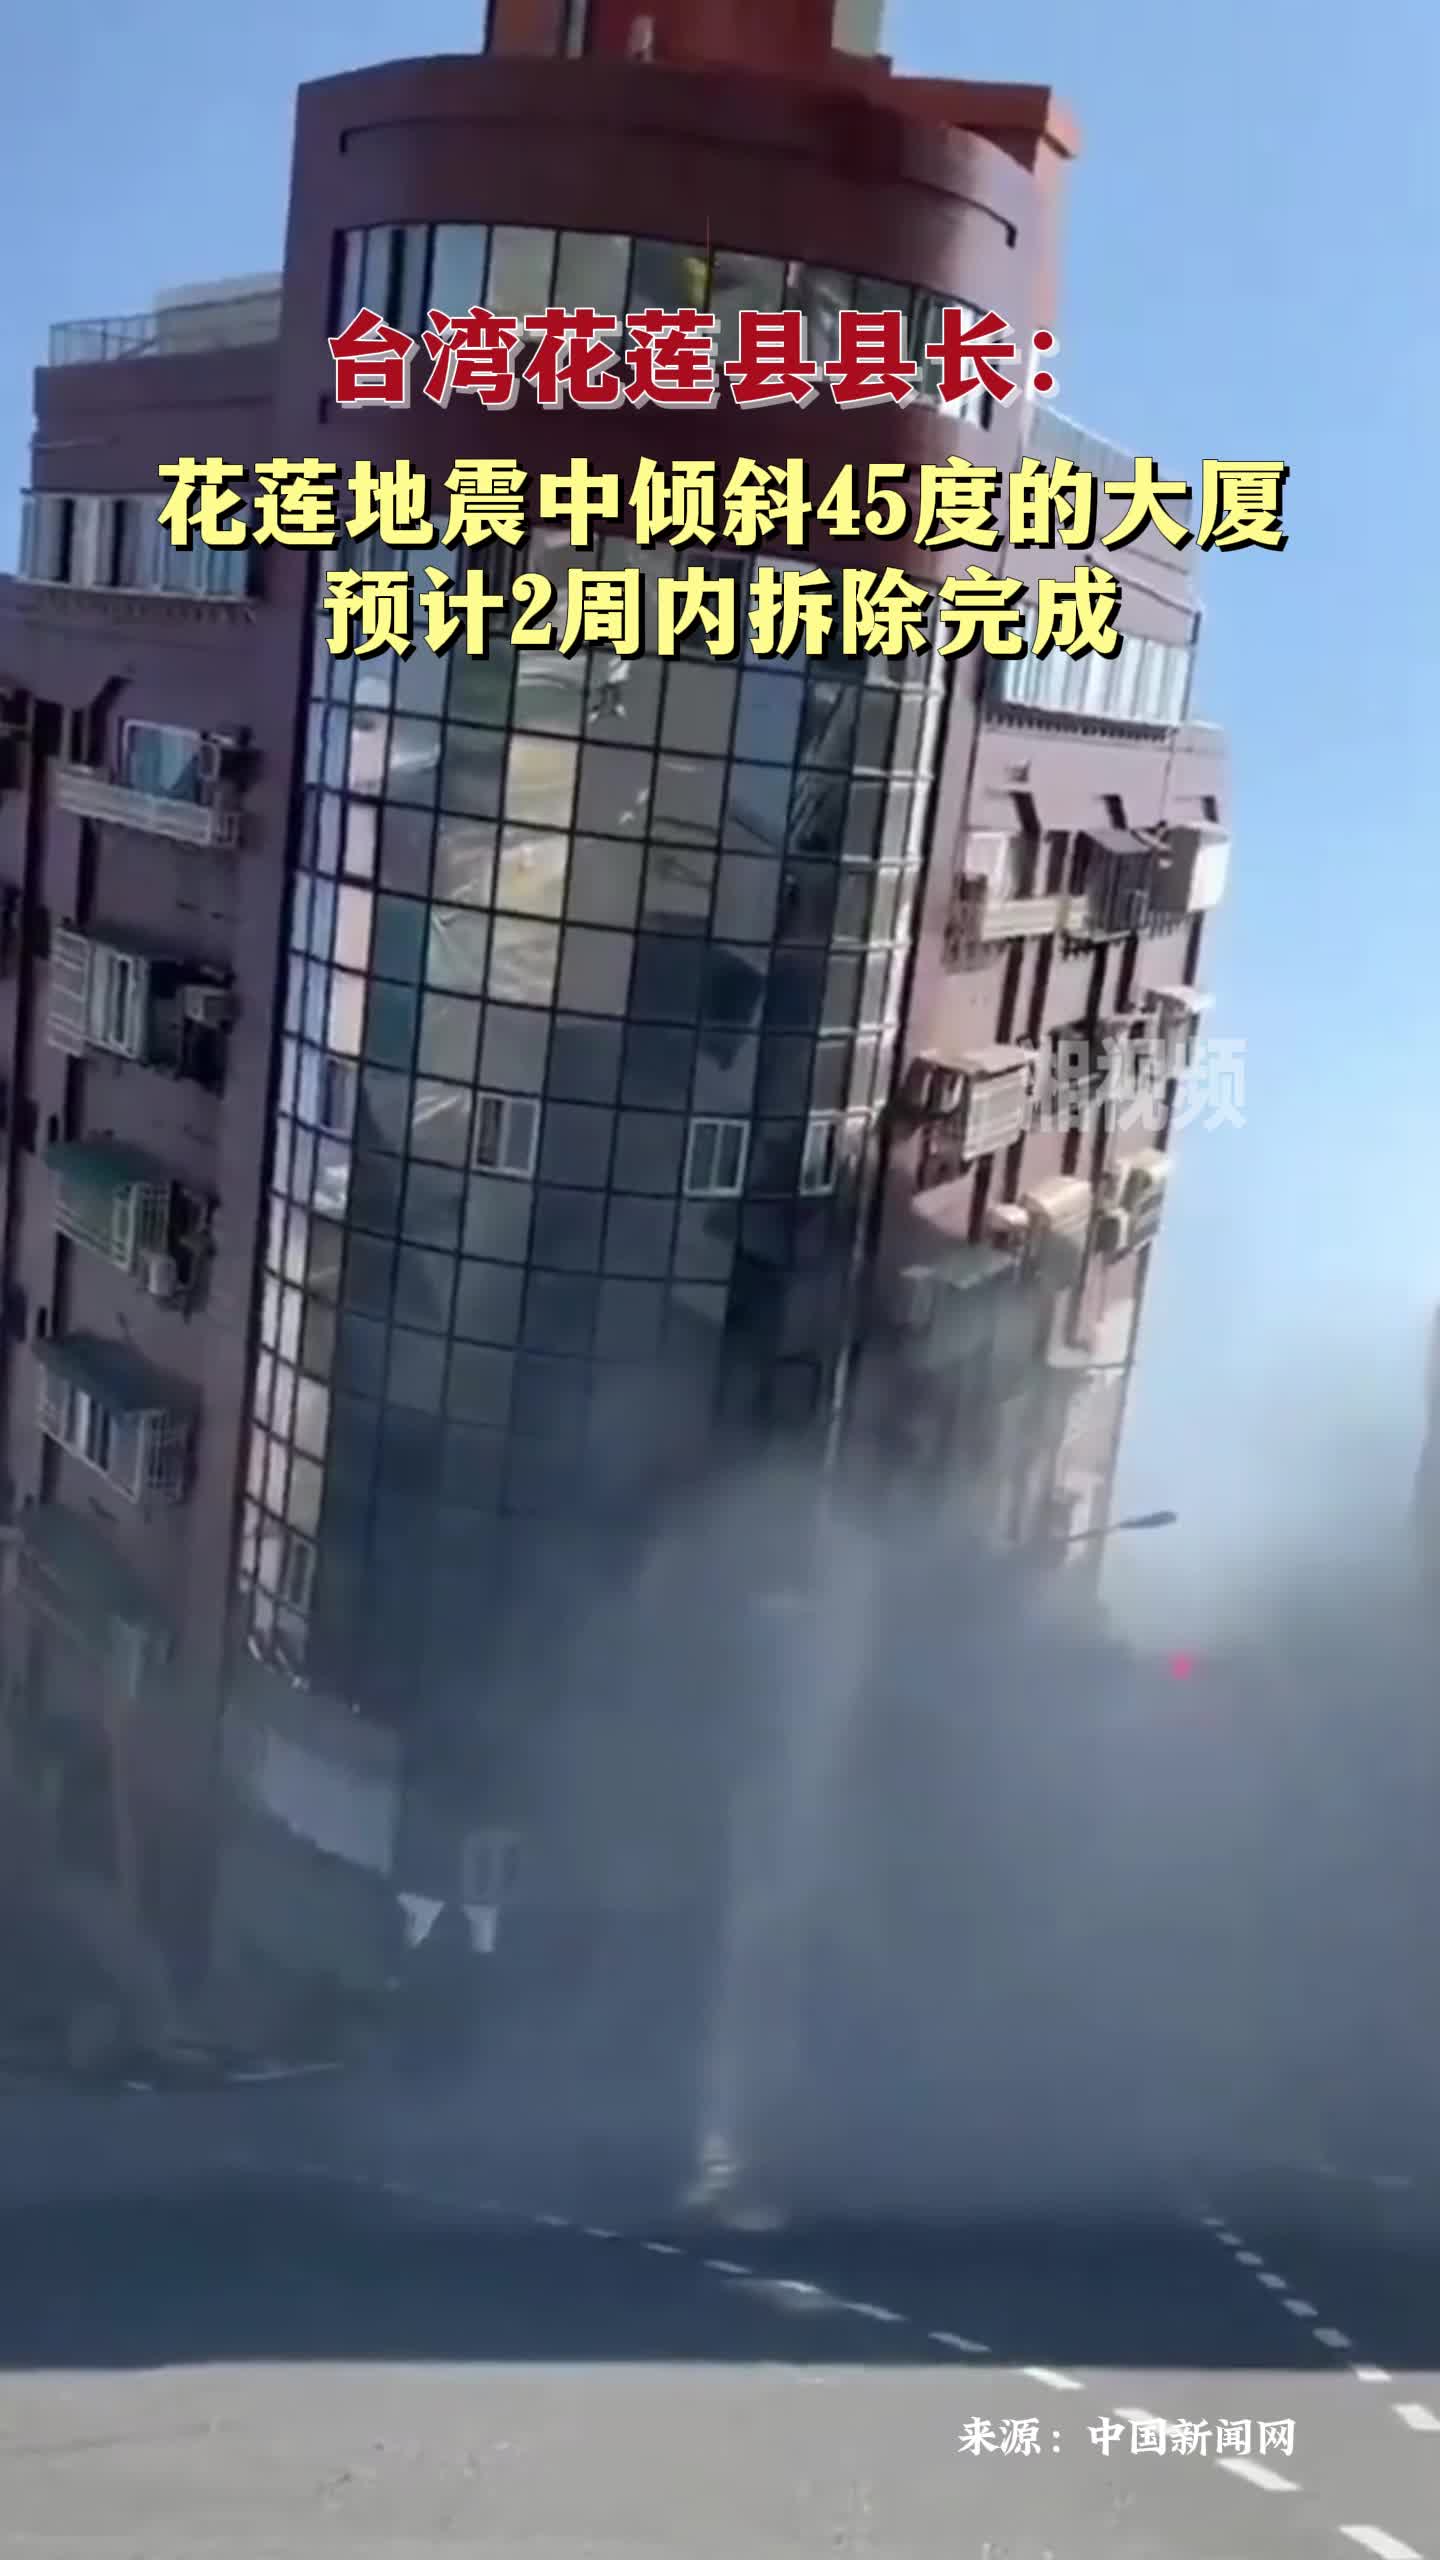 花莲地震中倾斜45度的大厦 预计2周内拆除完成